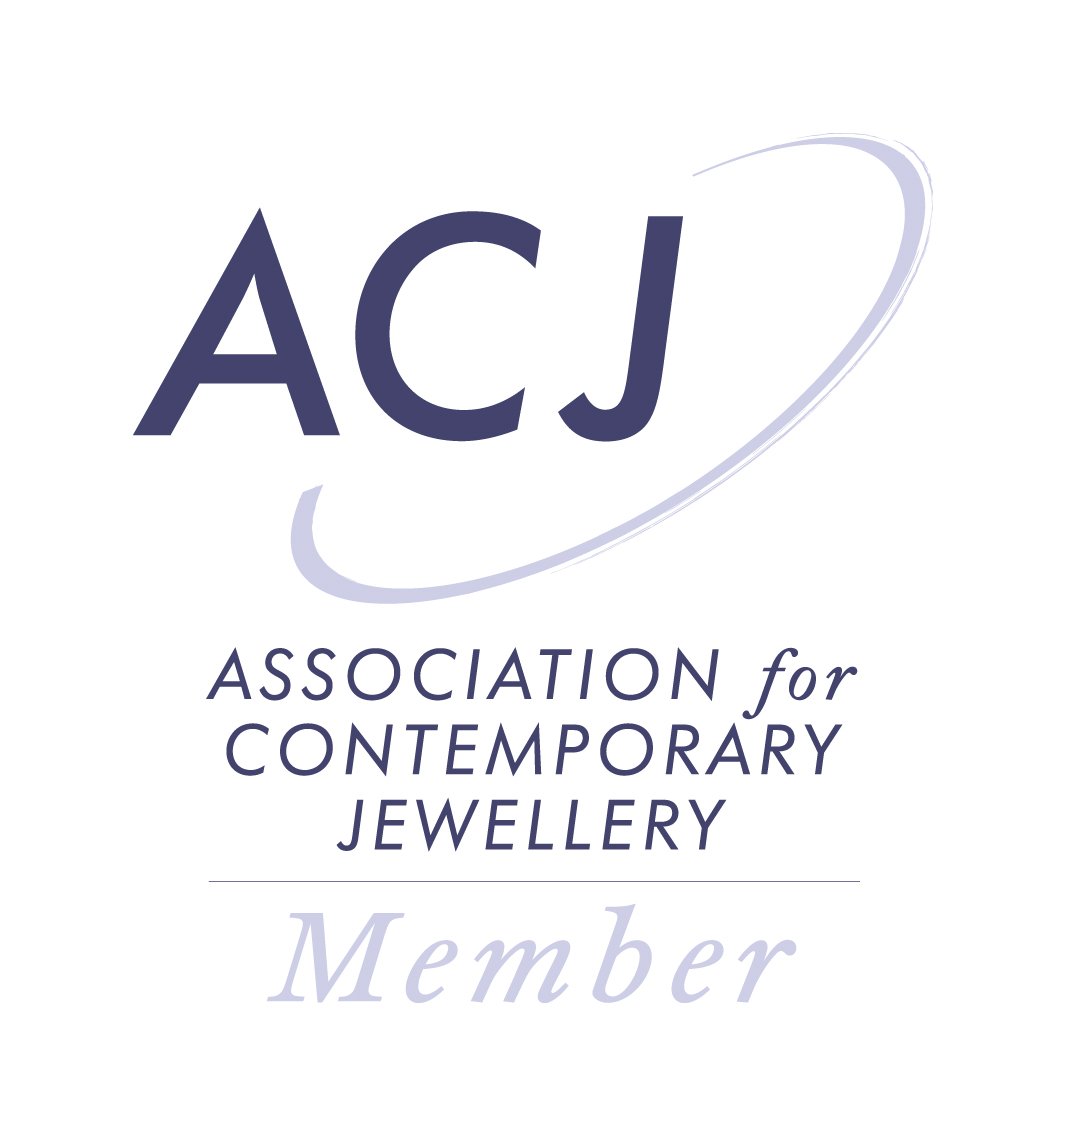 Association for Contemporary Jewellery member logo